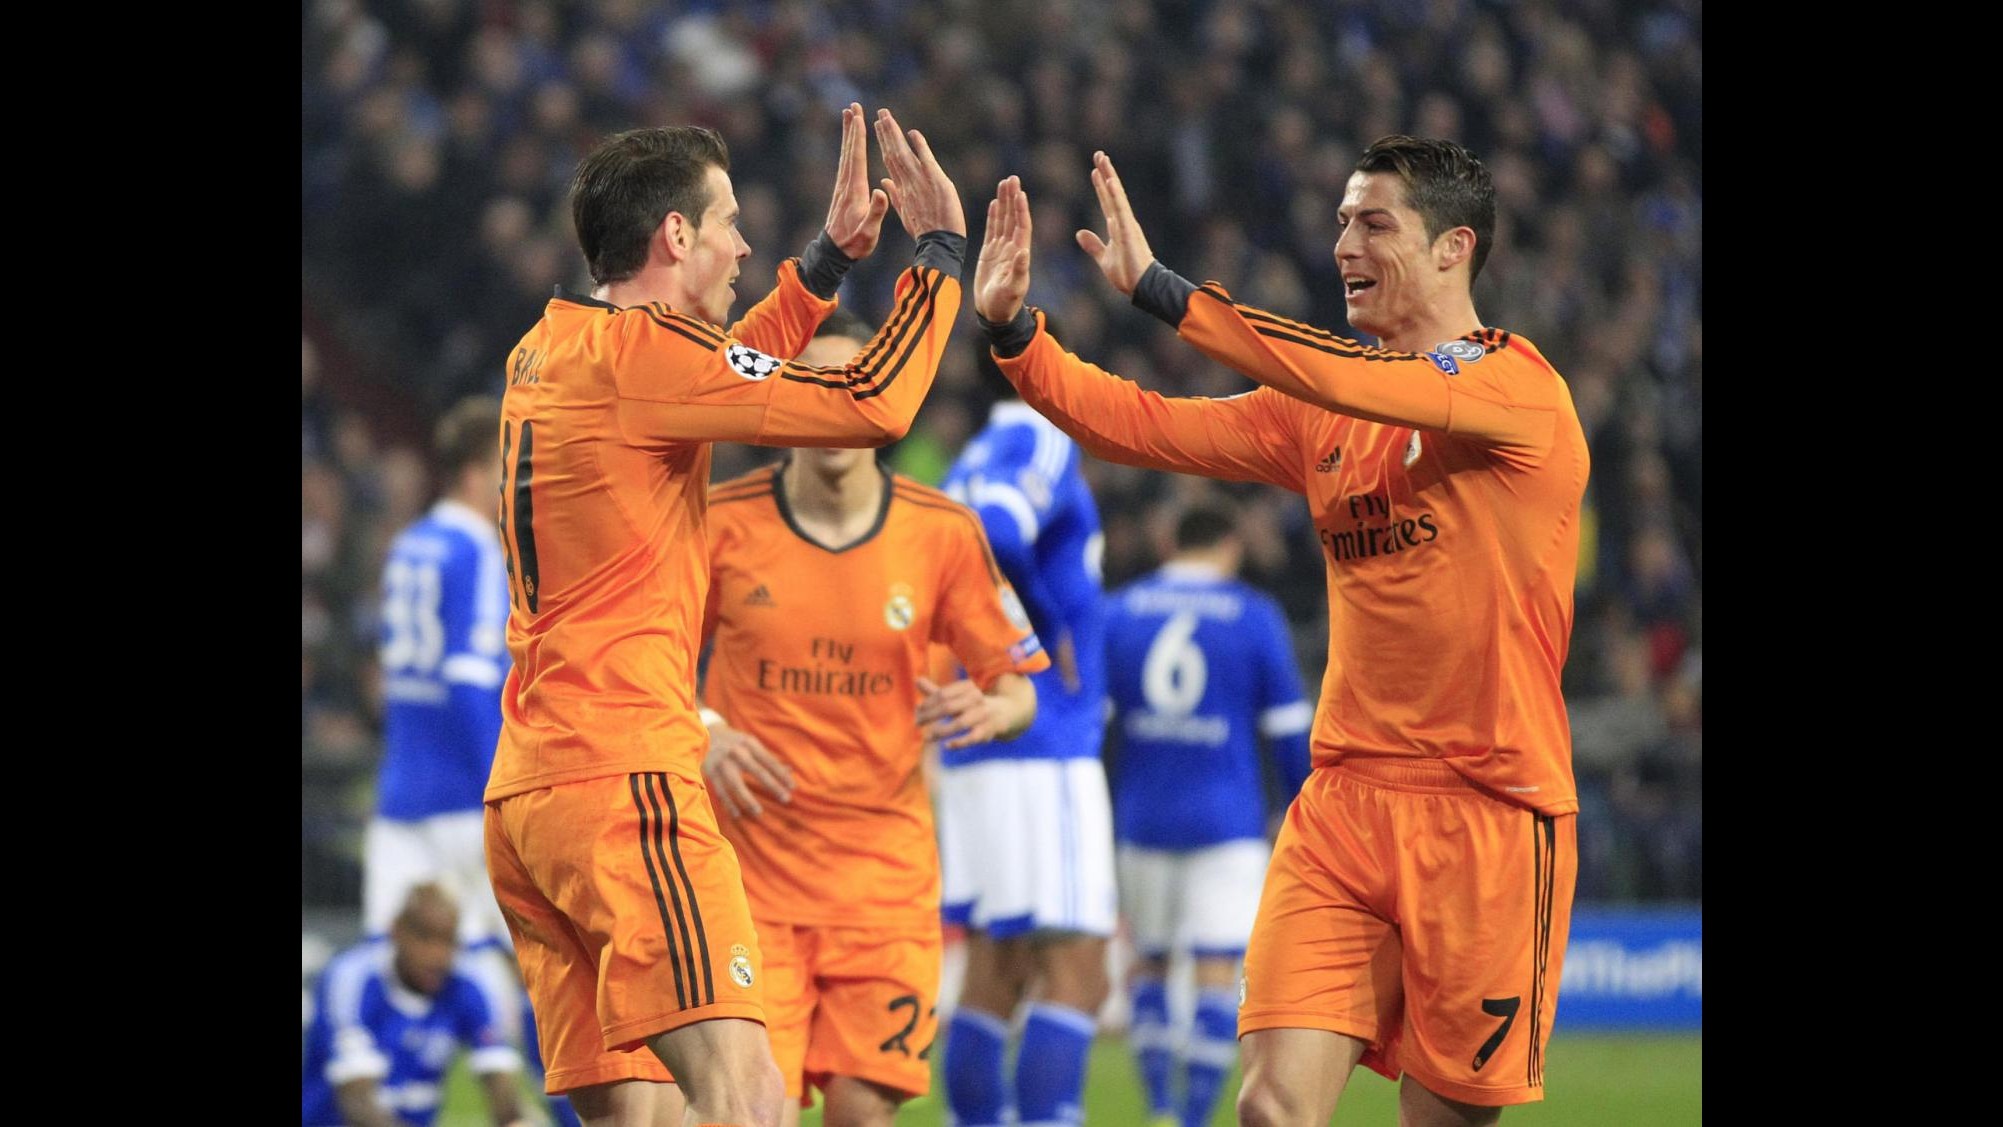 Champions League: Real passeggia in Germania, Schalke 04 travolto 6-1. Doppiette per Ronaldo, Bale e Benzema